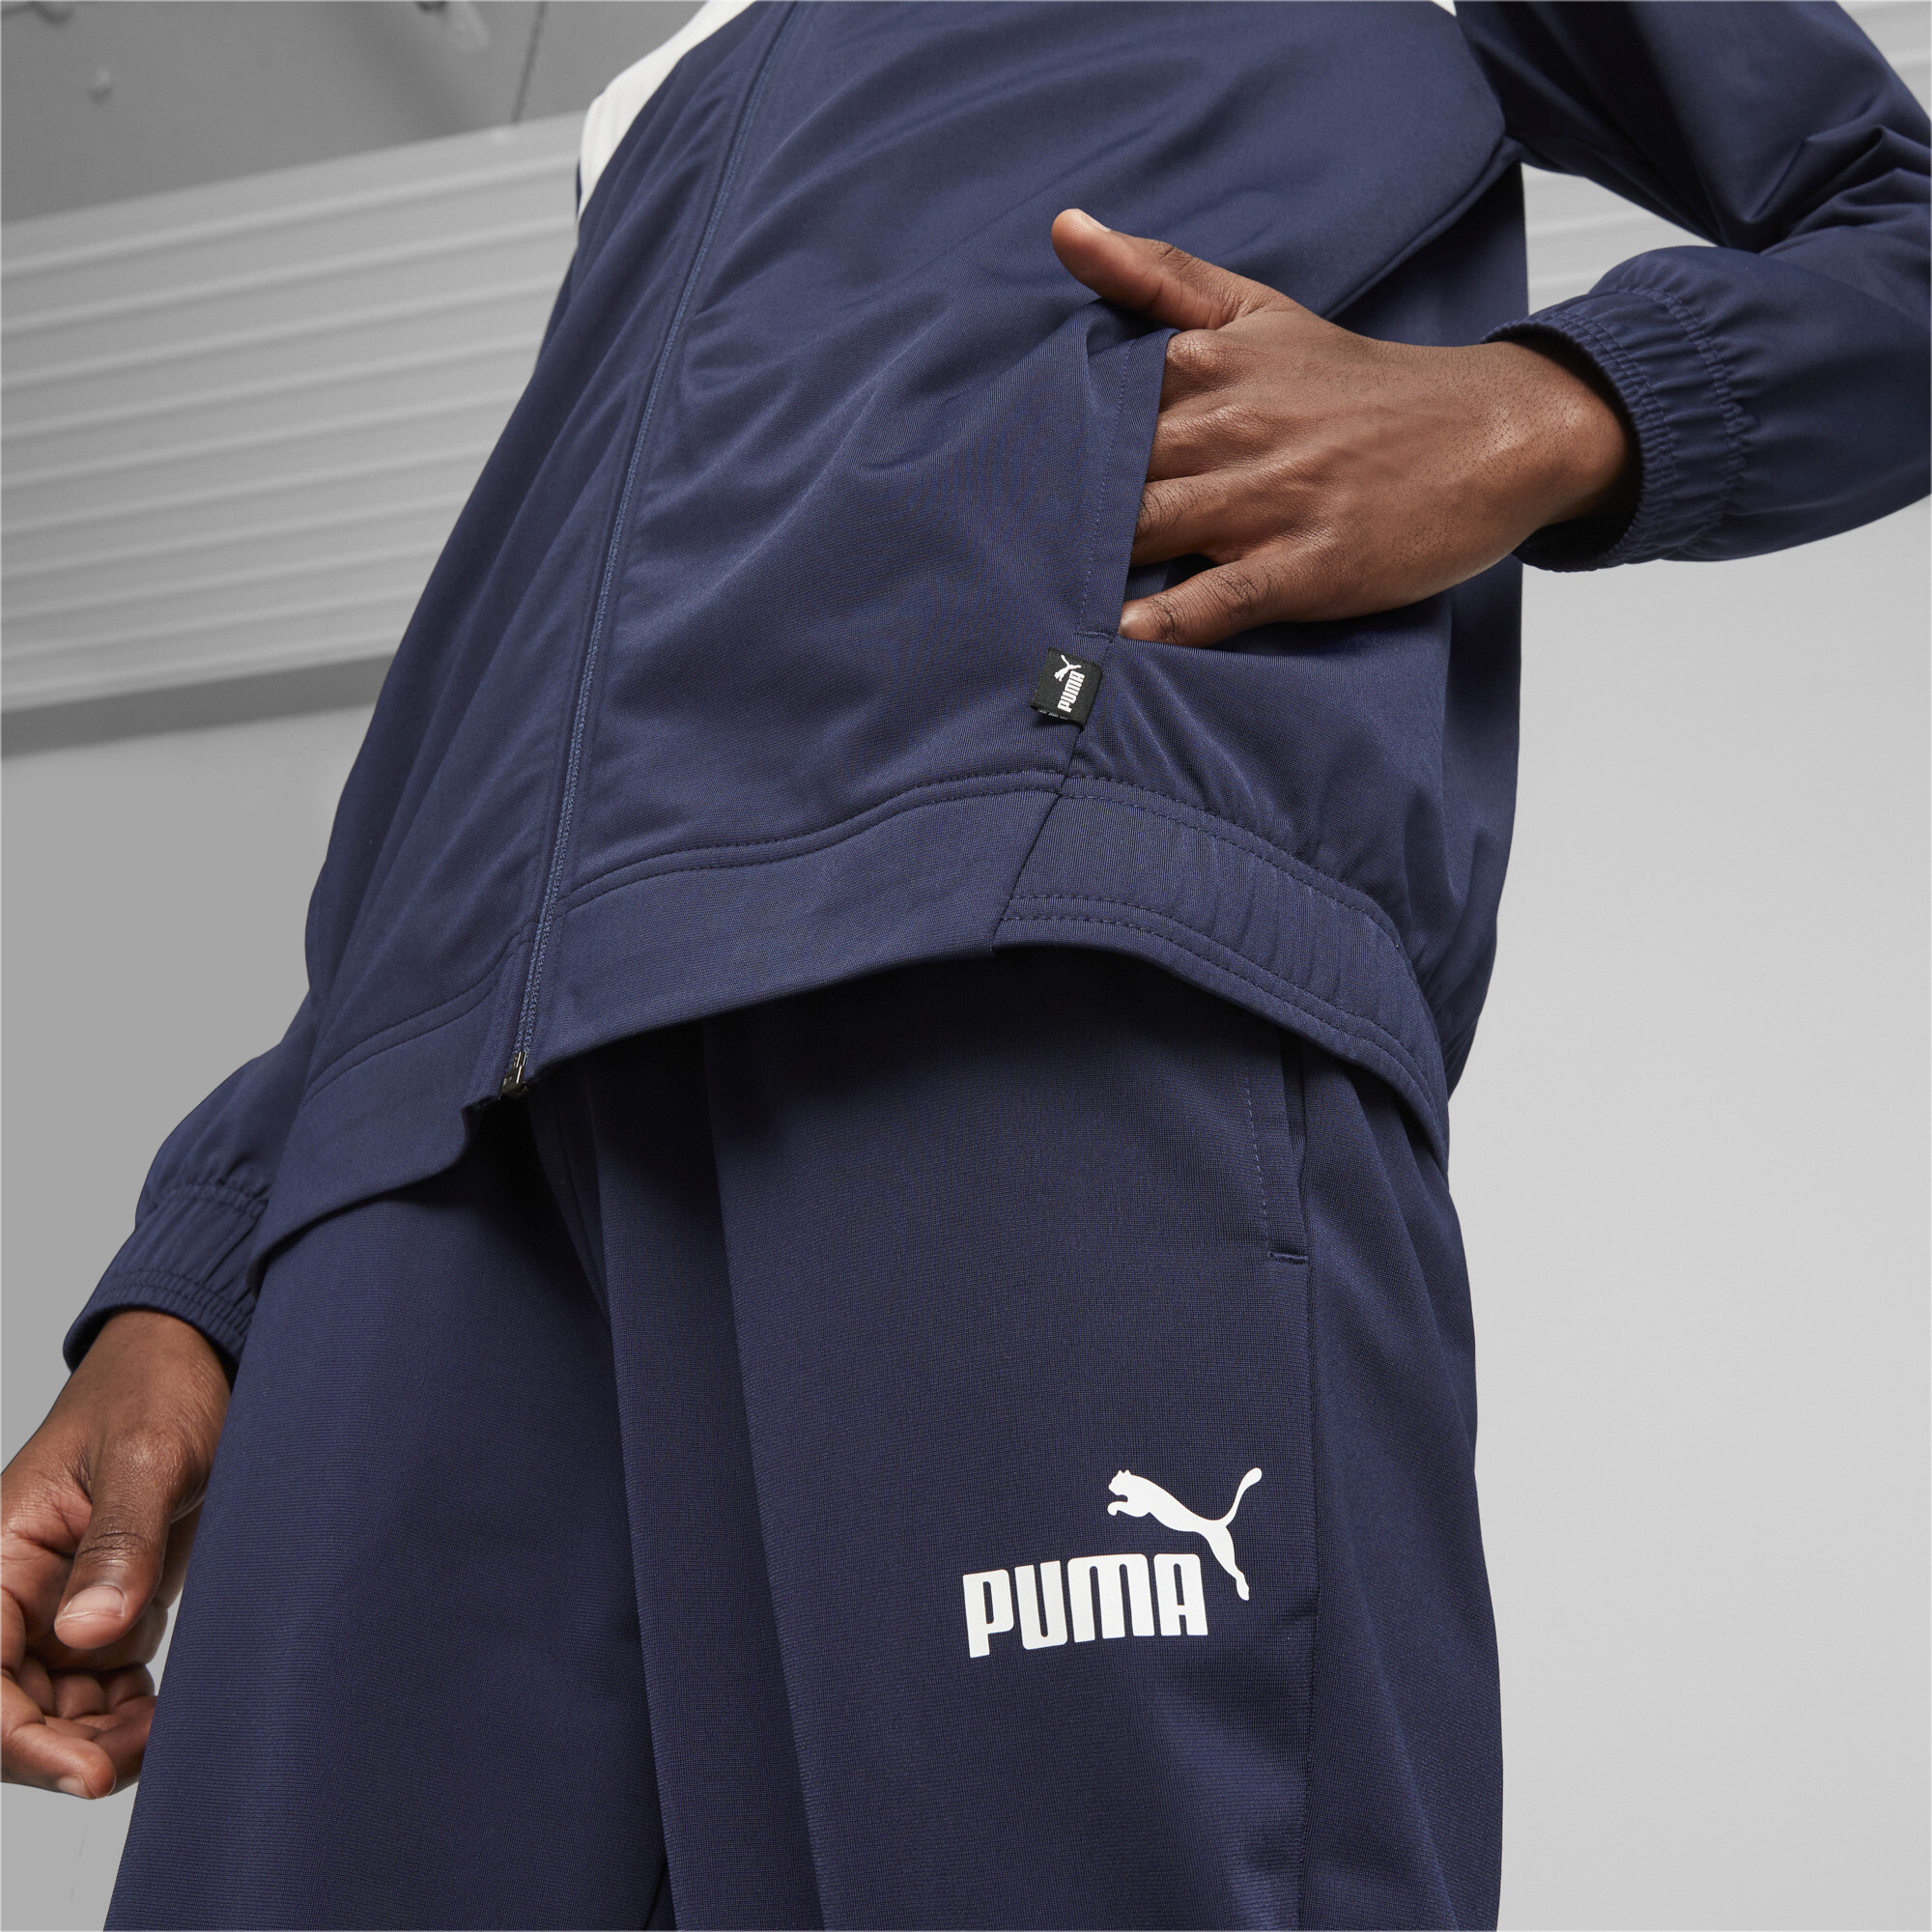 Men's Puma Men's Poly Tracksuit, Blue, Size S, Clothing